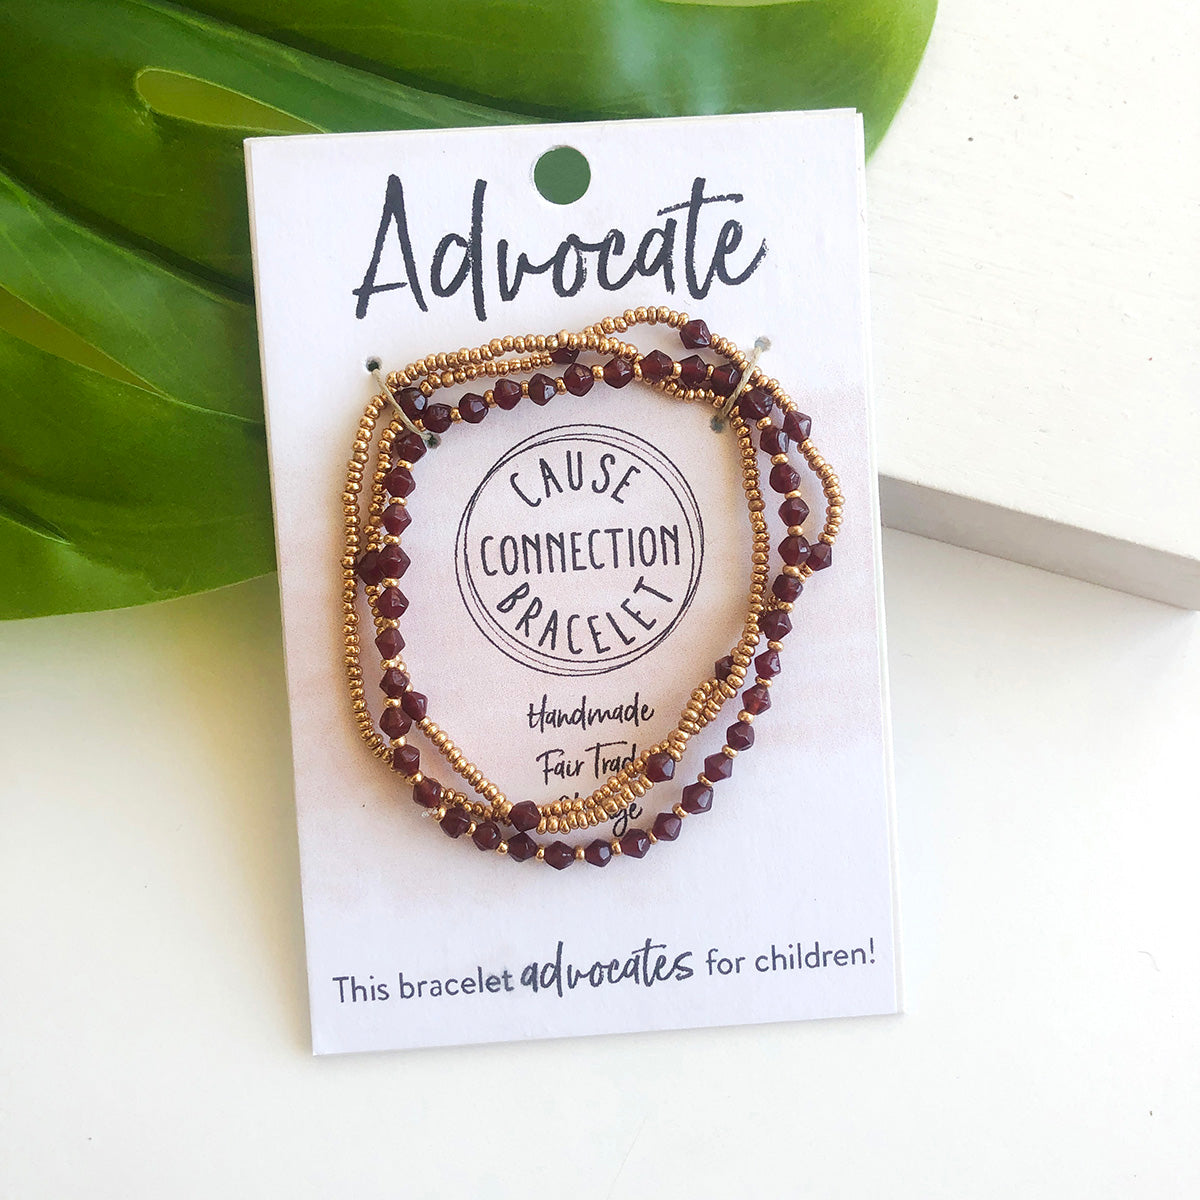 Advocate Cause Connection Bracelet